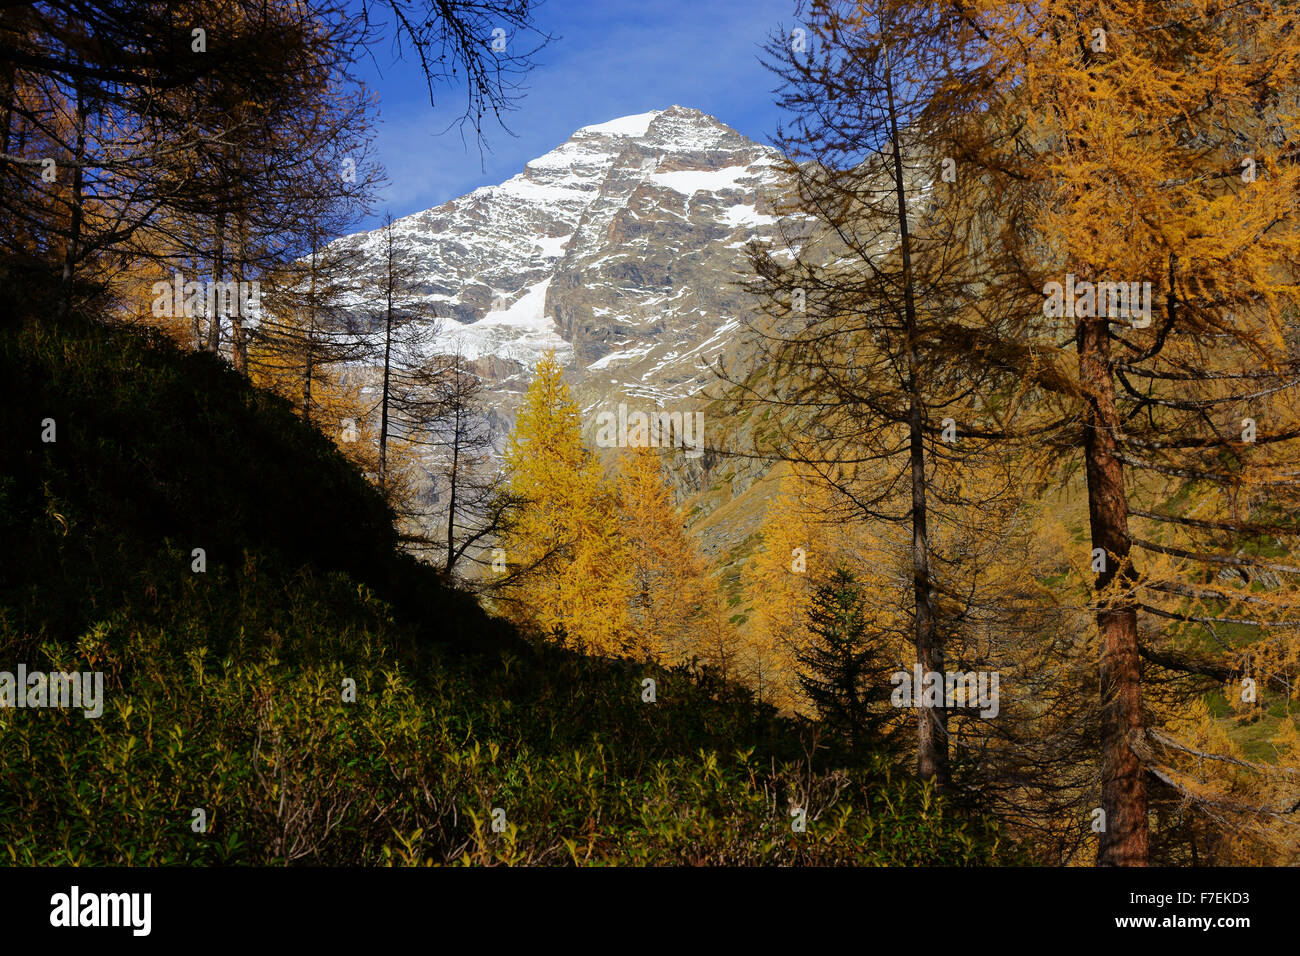 Mt.Lauterbrunnen Breithorn, côté sud du Lötschental, forêt de mélèzes en automne, Valais, Suisse Banque D'Images